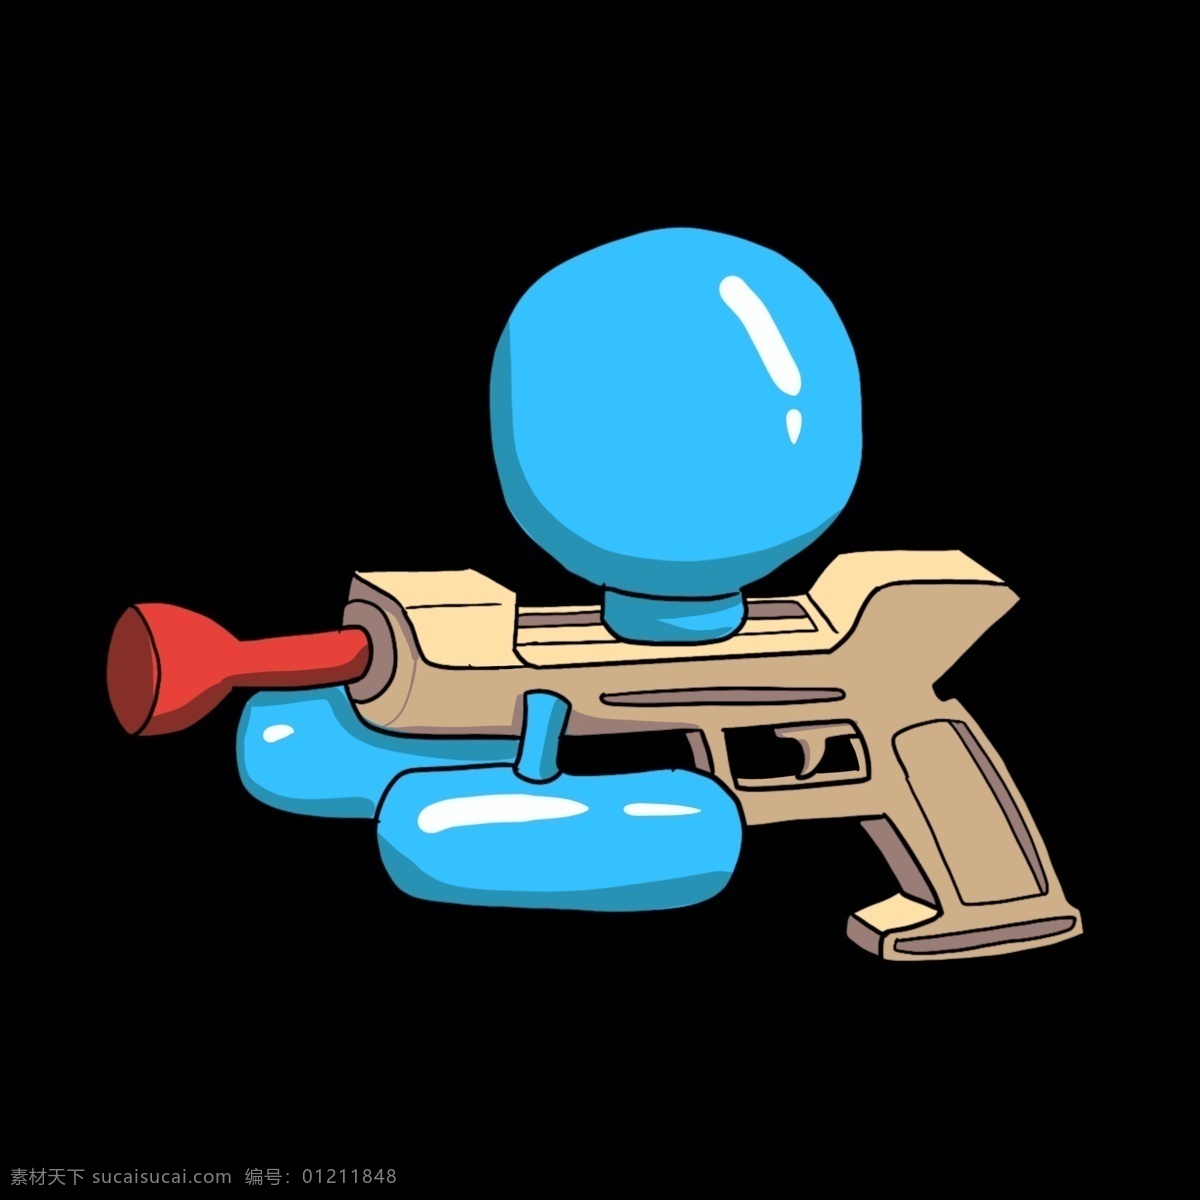 蓝色 水枪 装饰 插画 蓝色的水枪 漂亮的水枪 创意水枪 立体水枪 精美水枪 卡通水枪 玩具水枪